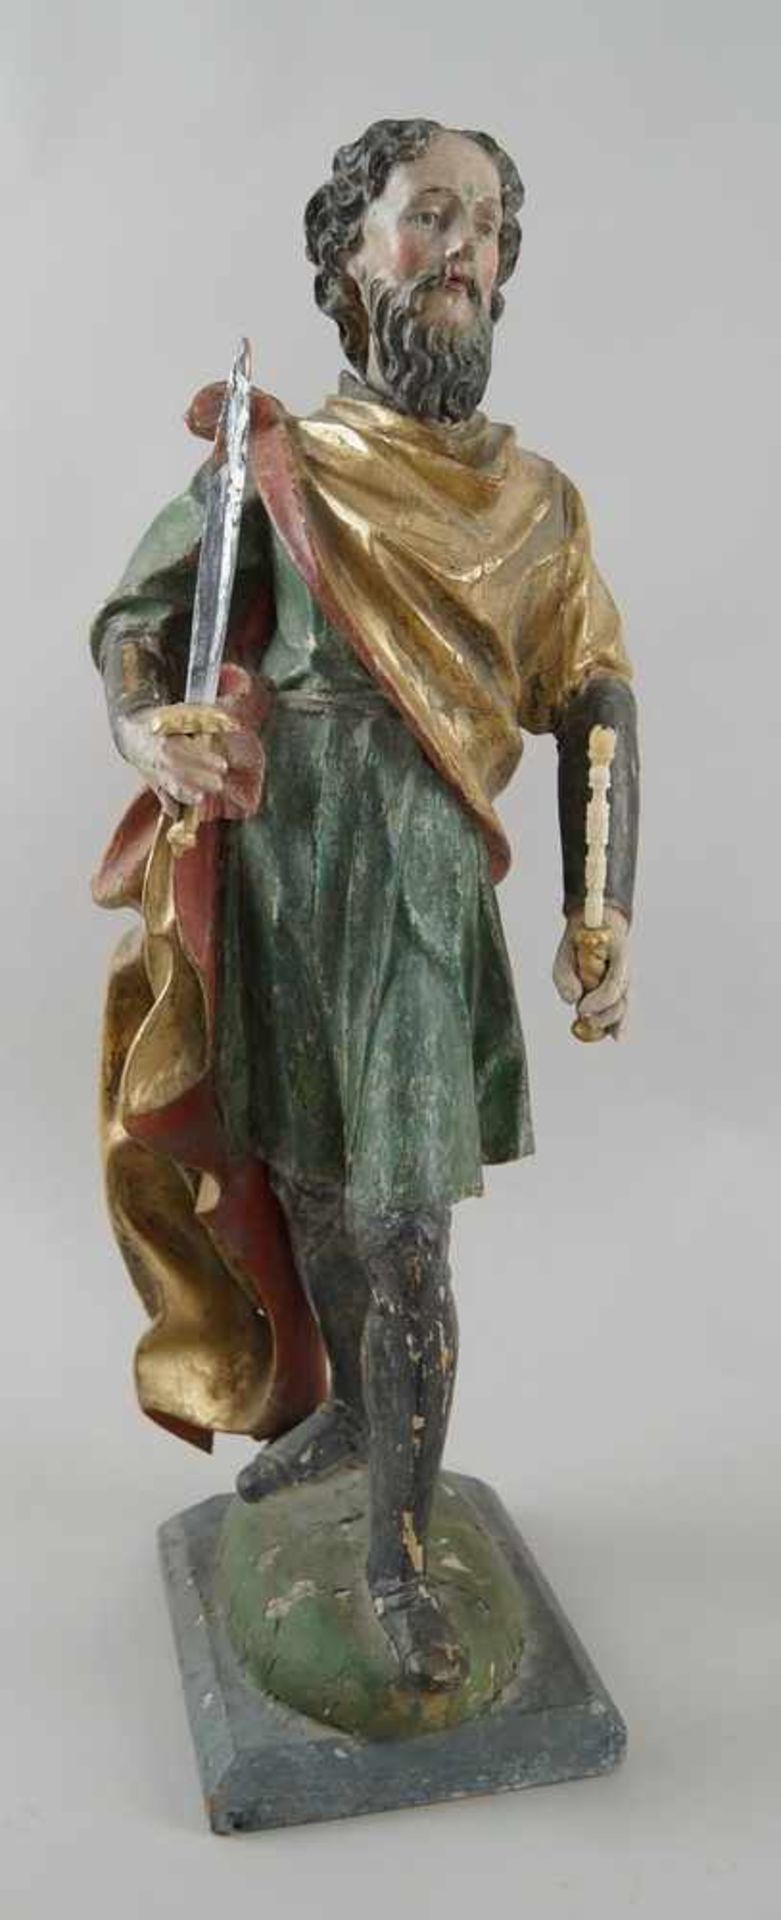 Stehender König, Holz geschnitzte und gefasste Skulptur, 18. JH, H 58 cm- - -24.00 % buyer's premium - Bild 2 aus 7